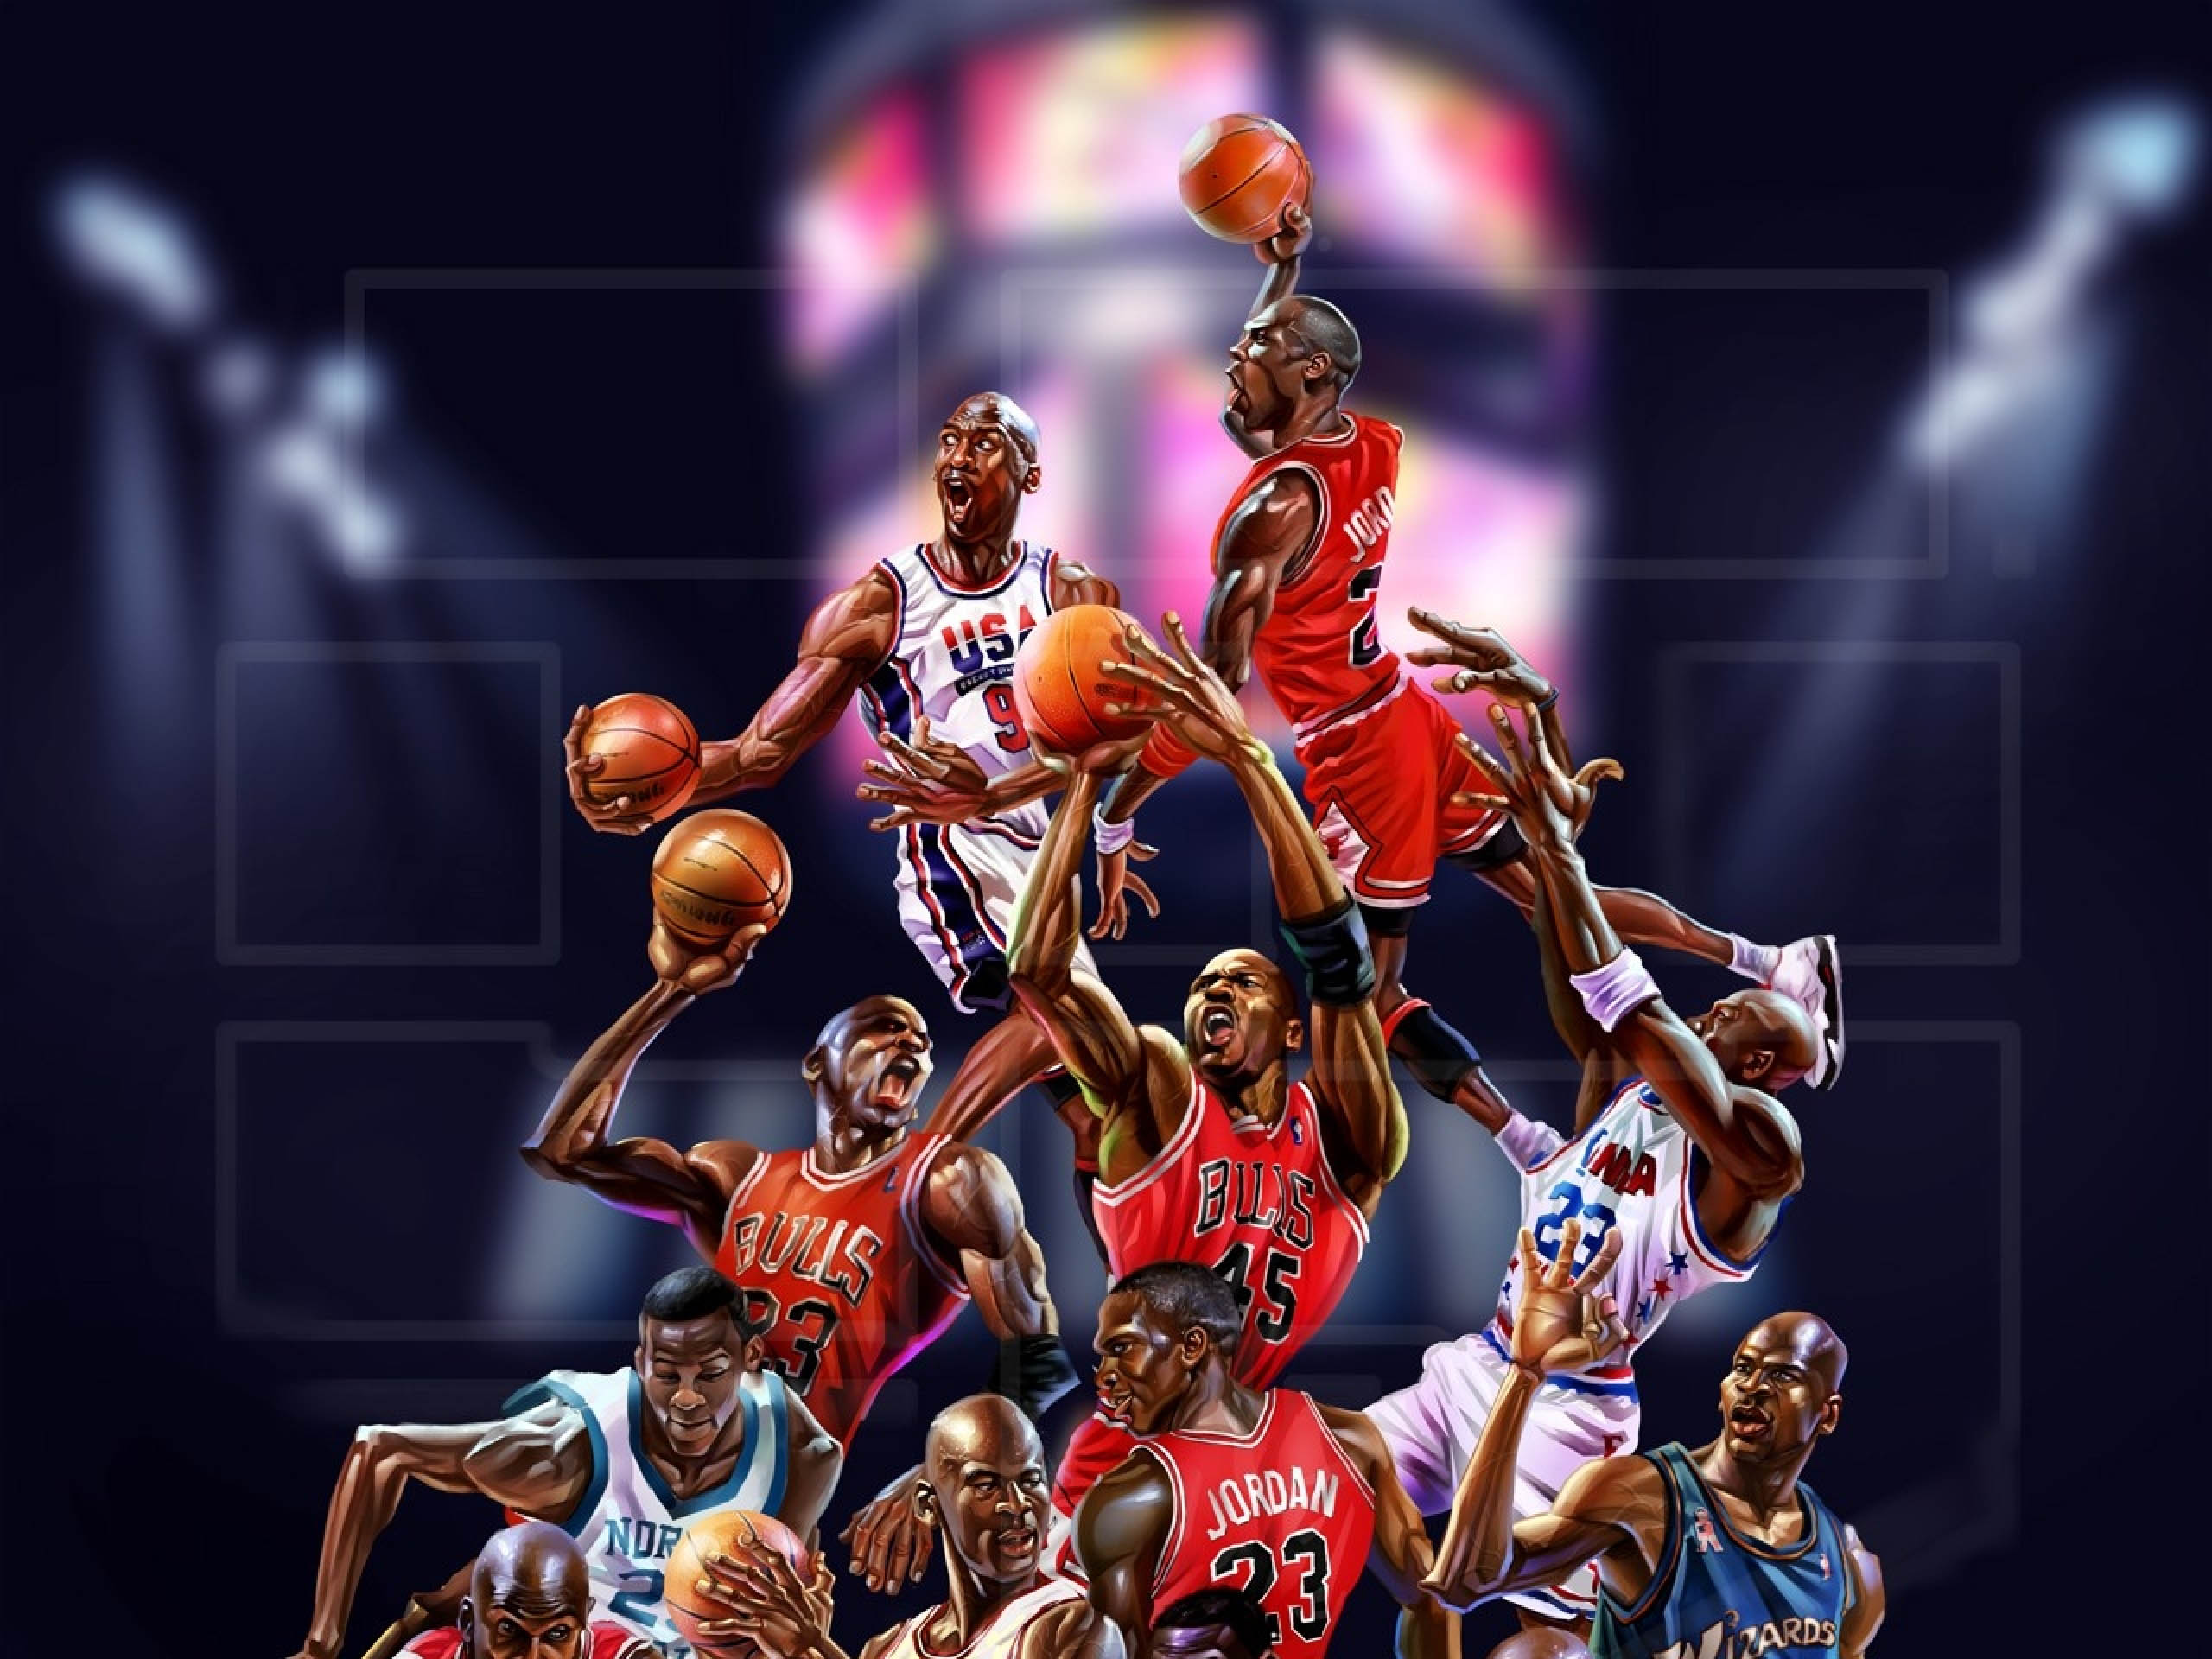 jordan wallpaper hd,giocatore di pallacanestro,squadra,campionato,pallacanestro,giocatore